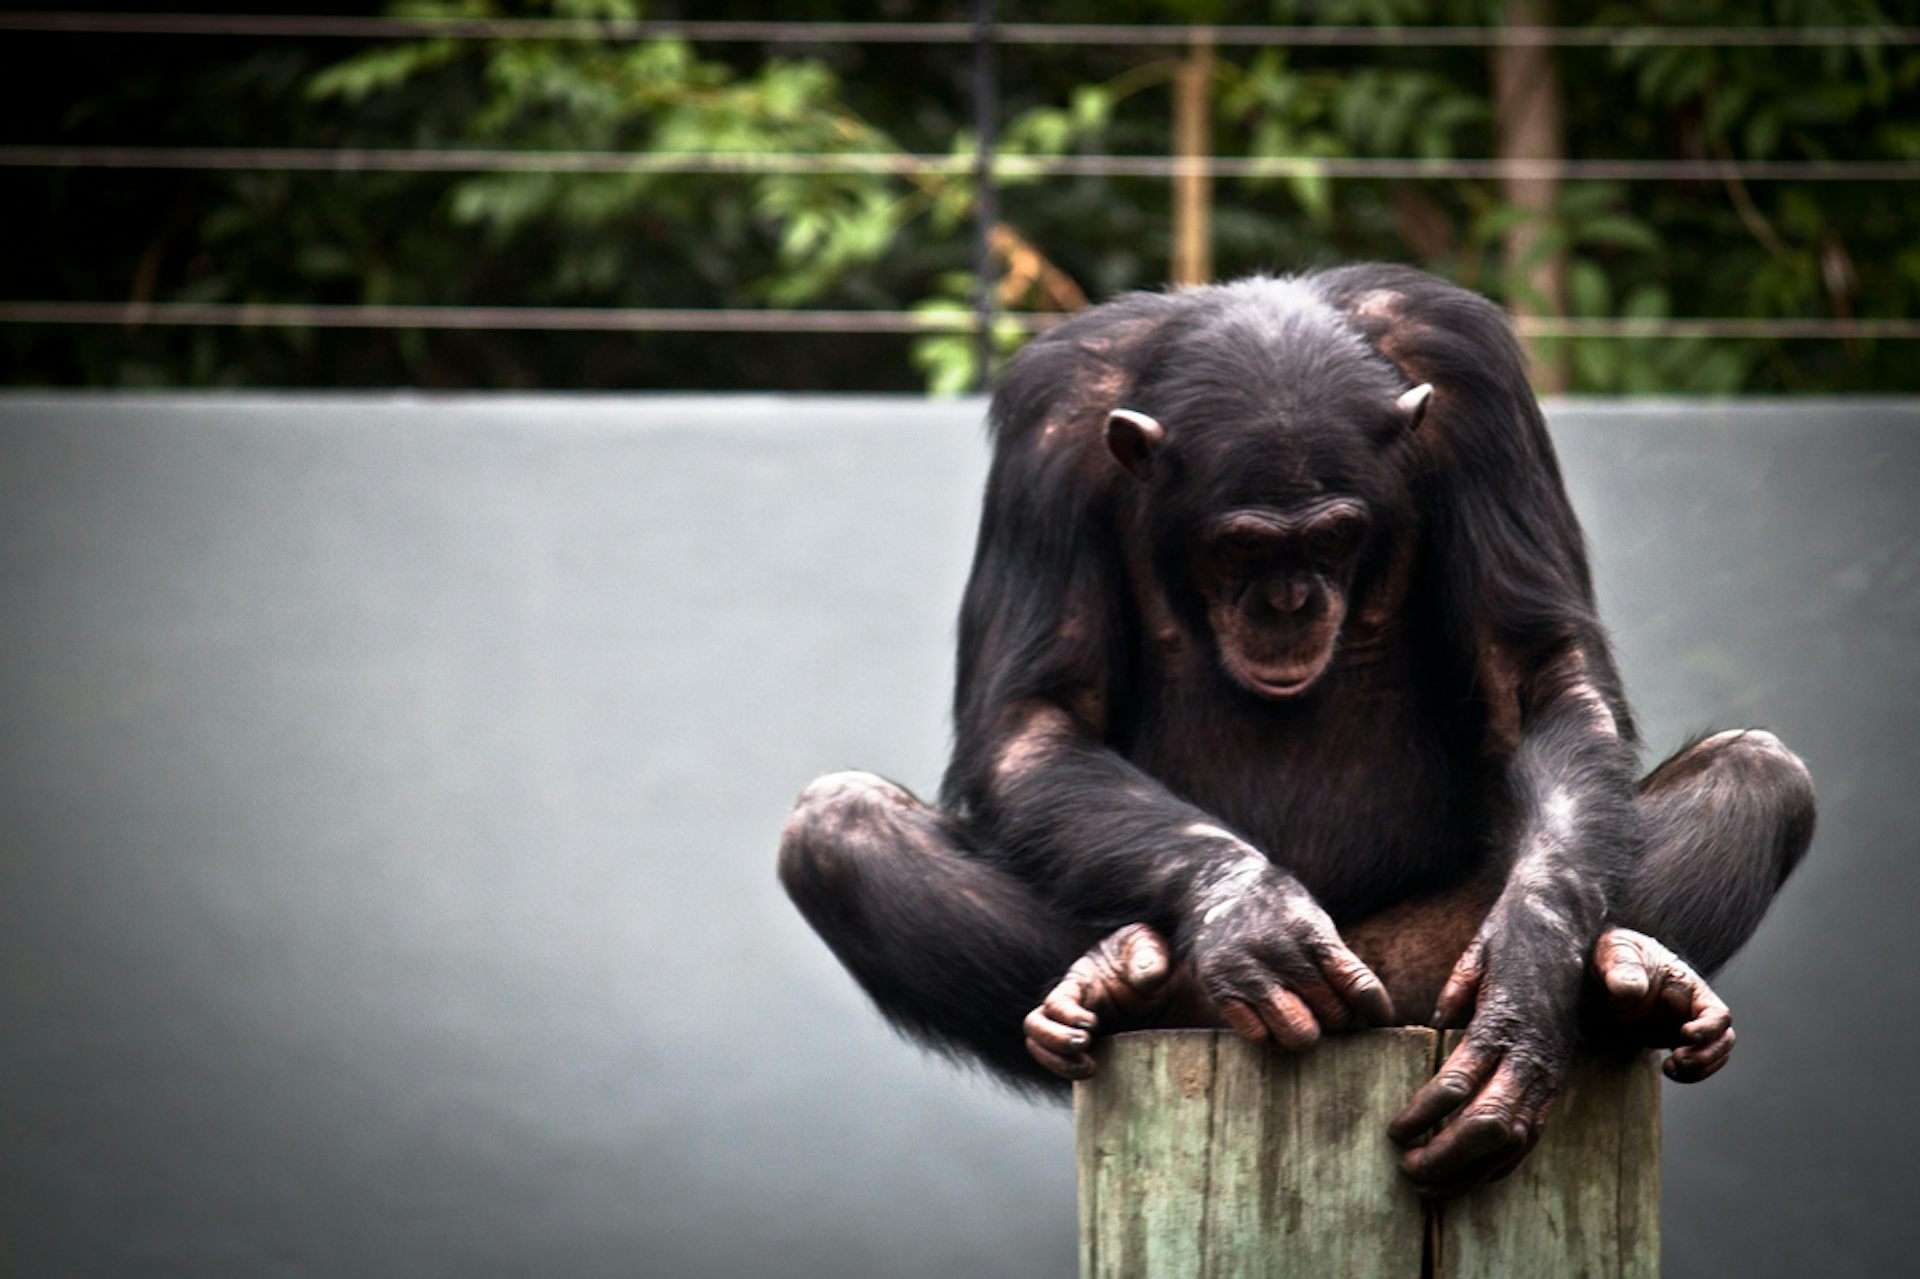 orangutan vs chimpanzee